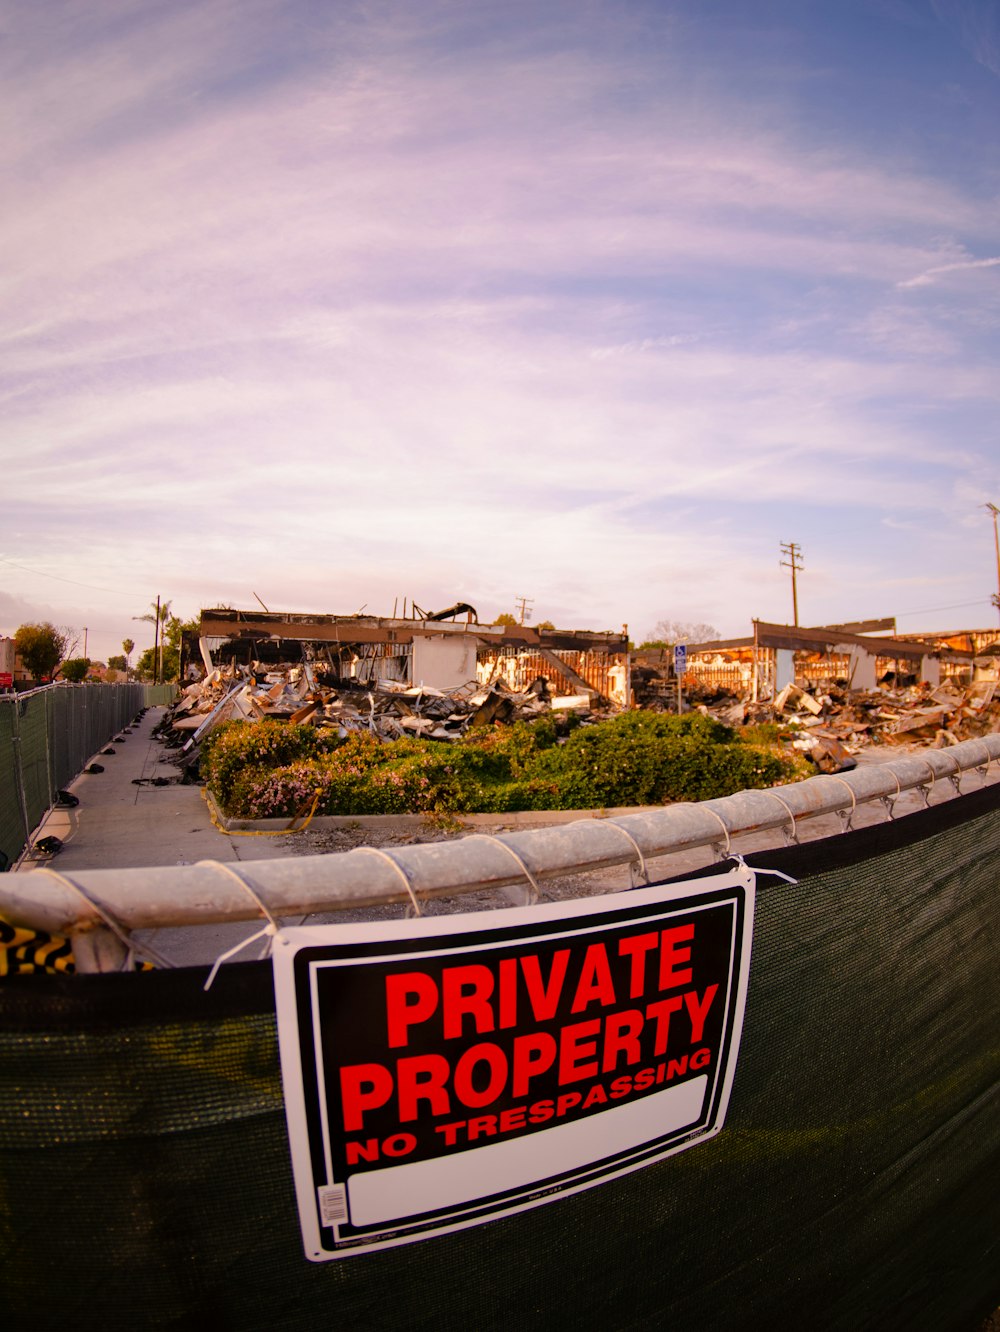 Ein privates Grundstücksschild ist an einem Zaun angebracht